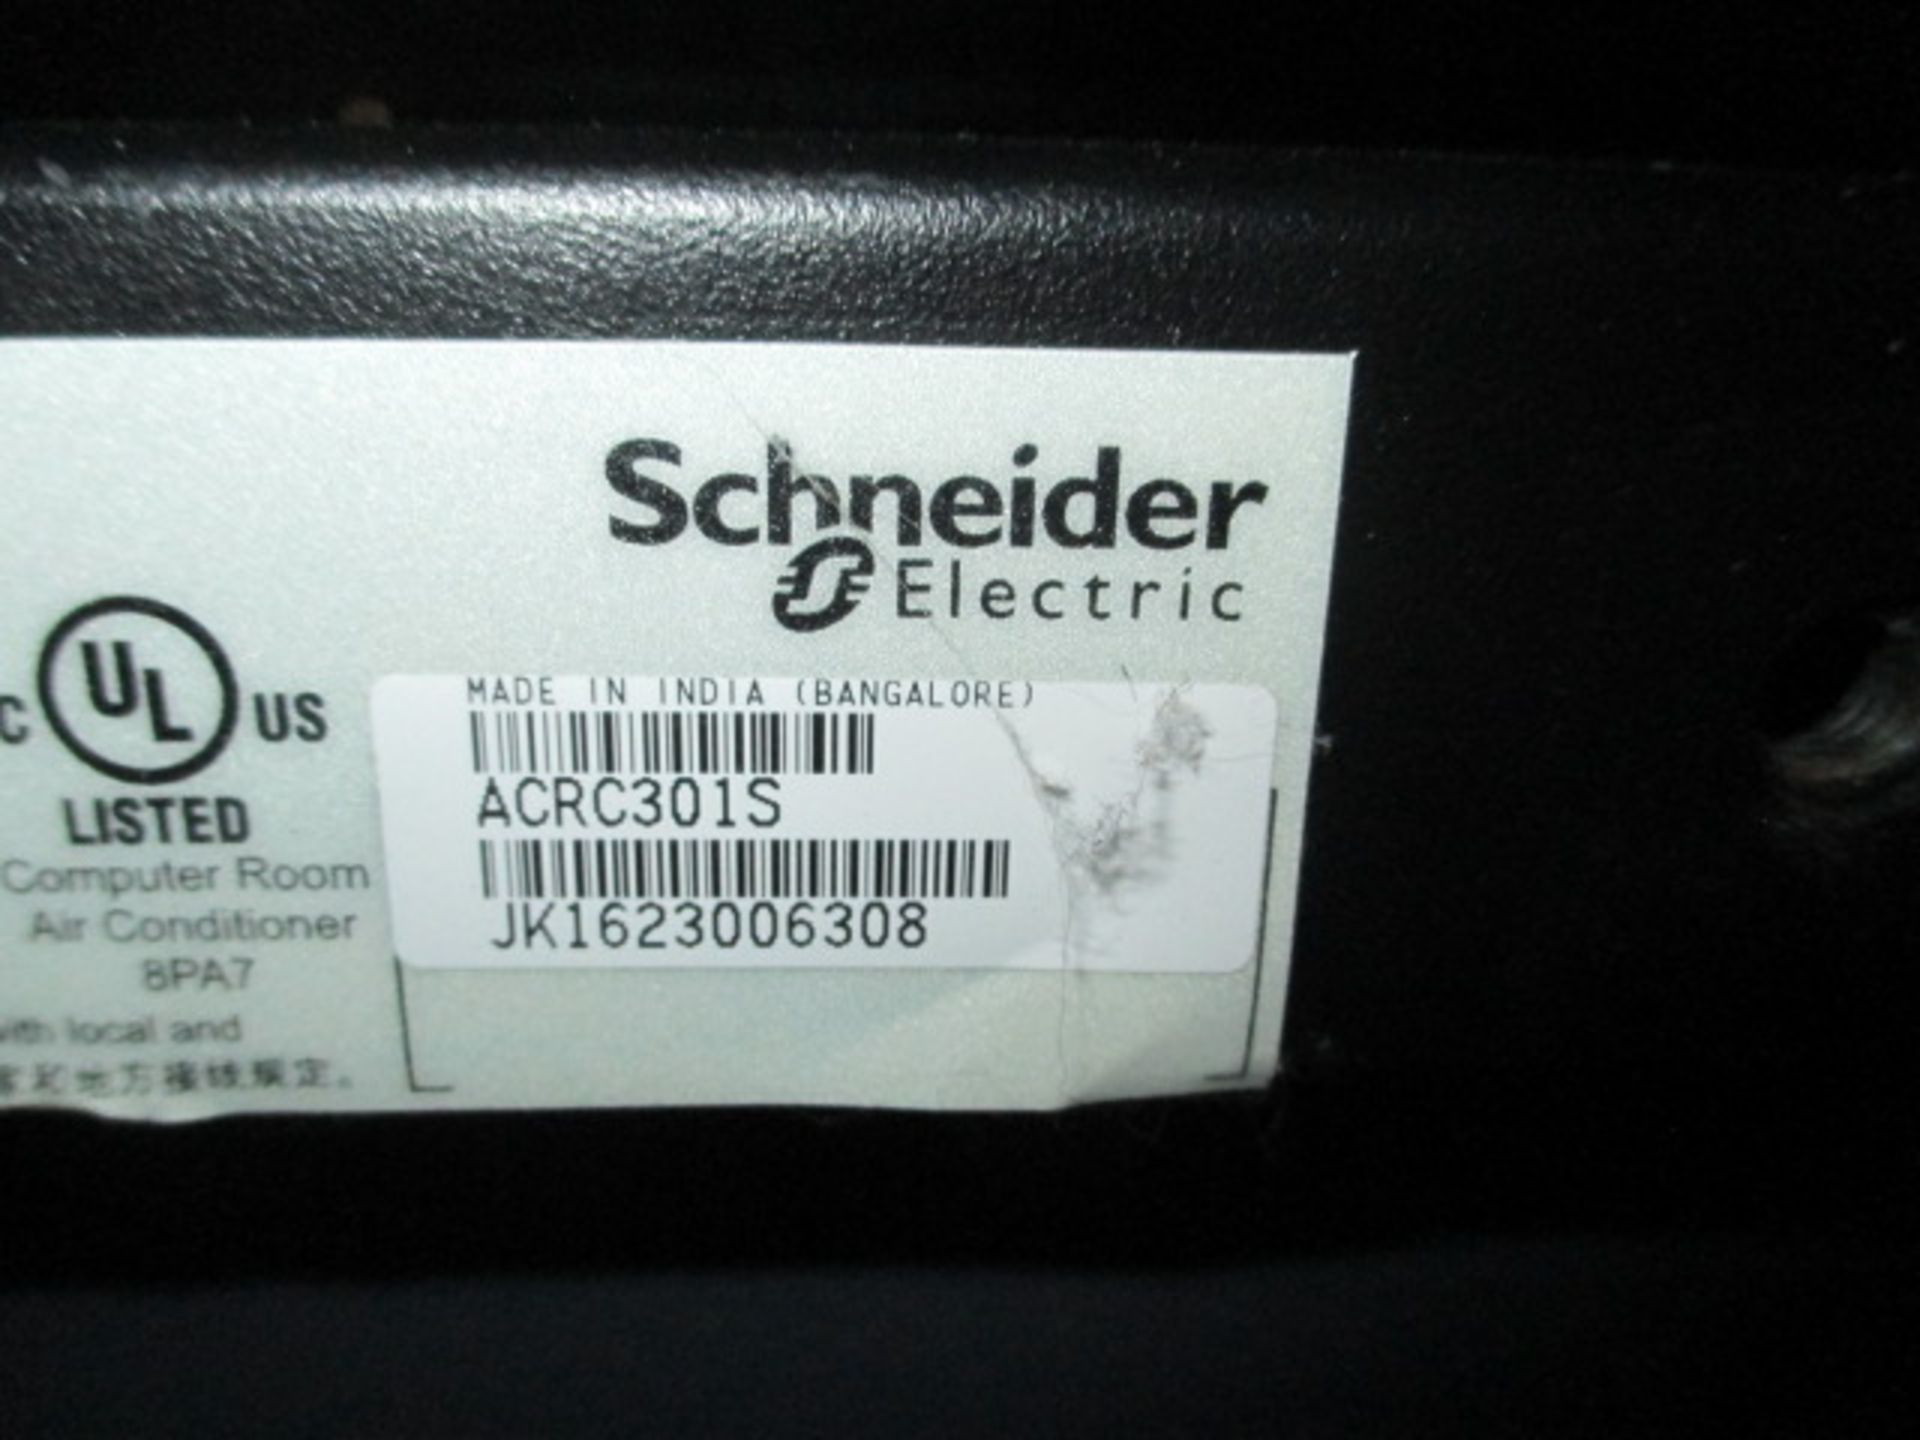 Schneider Cooling System - Image 4 of 4